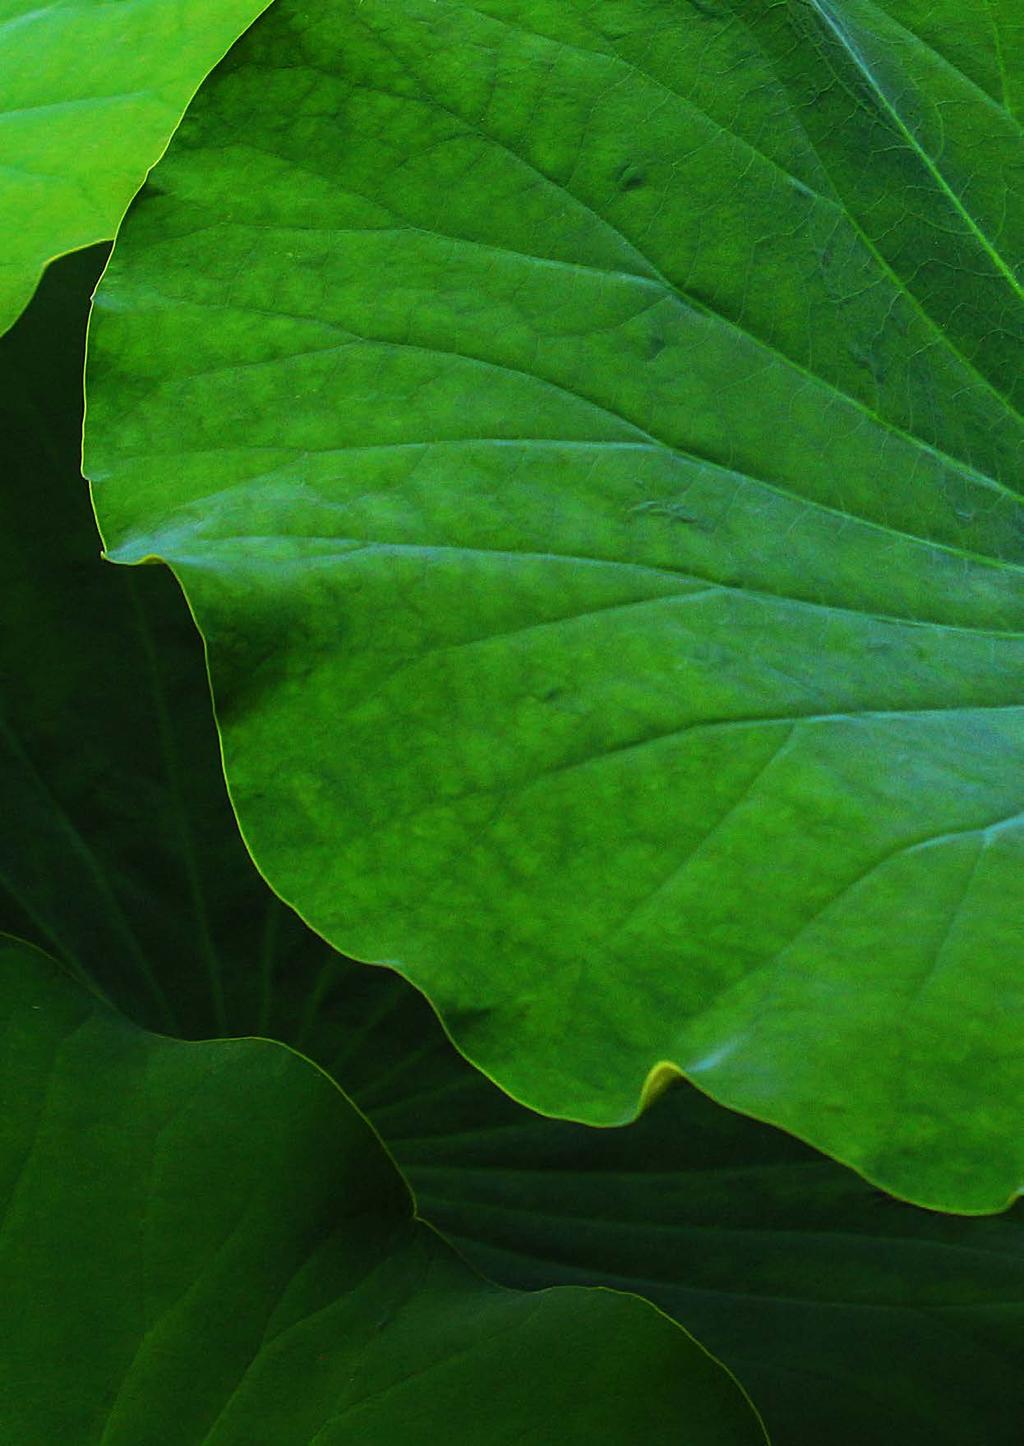 OrganoClicks Affärsmodell & Värdekedja Funktionellt trä Gröna ytbehandlingar & rengöringsprodukter Grön kemi Biokompositer Leverantörer Hyvlerier & produktionsenheten Grön kemi Produktionsenheten